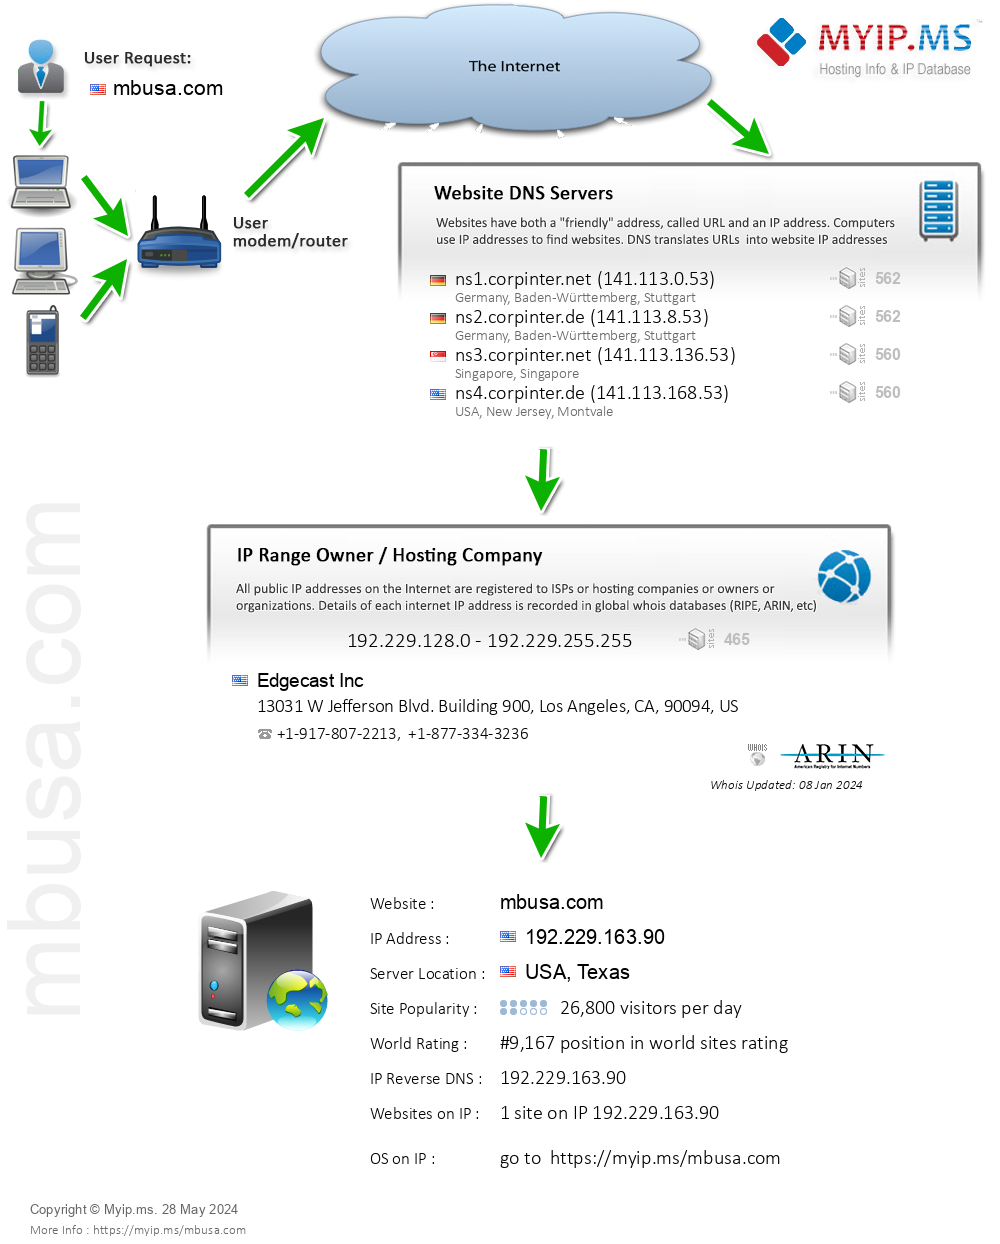 Mbusa.com - Website Hosting Visual IP Diagram